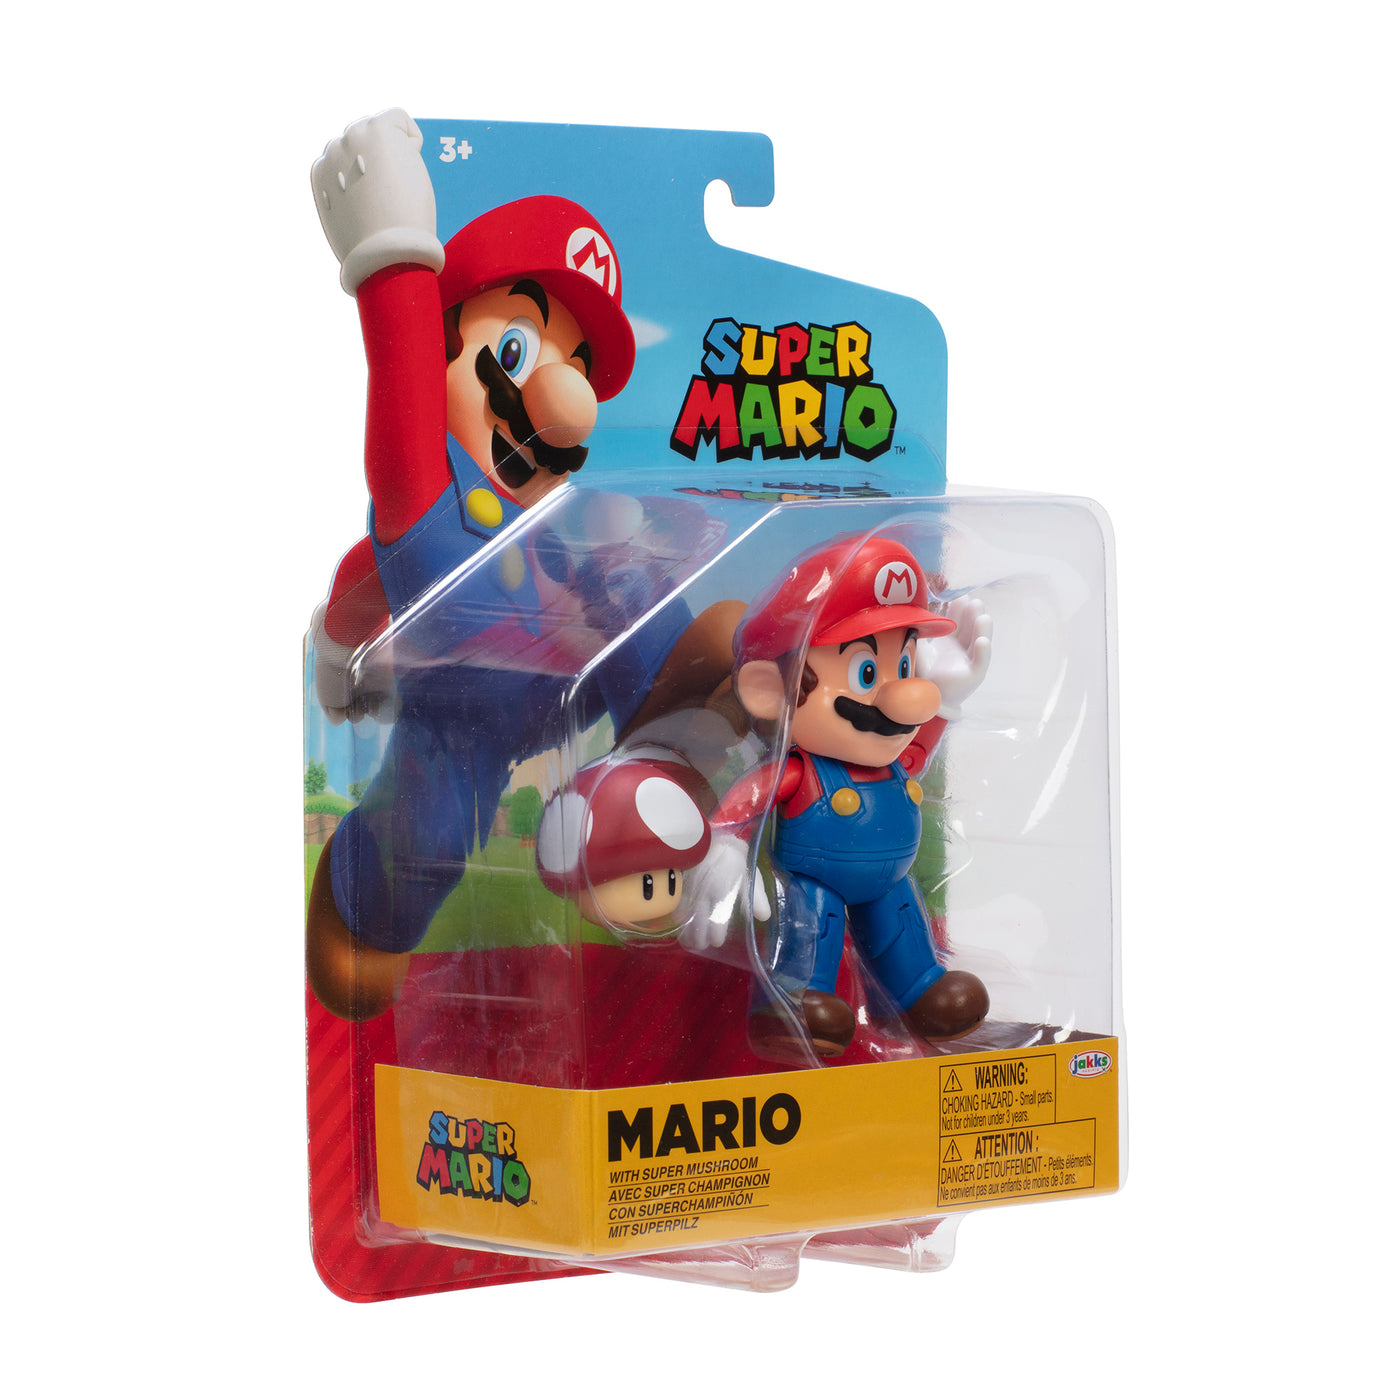 Nintendo Super Mario 4" Mario Wave 35